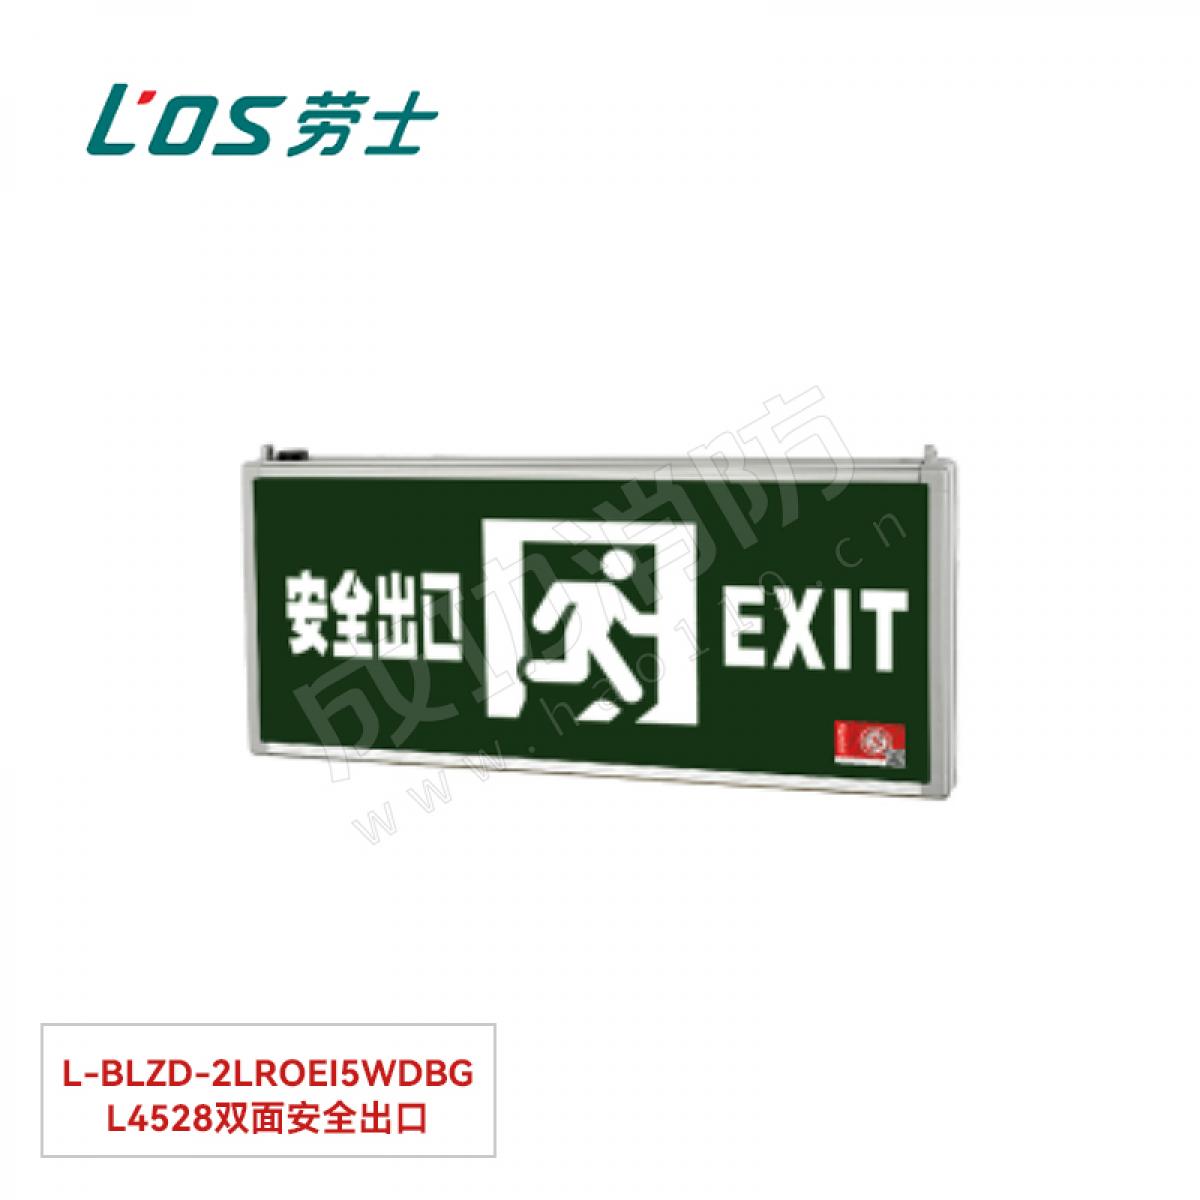 劳士 消防应急标志灯(吊装) L-BLZD-2LROEⅠ5WDBB L4507双面安全出口